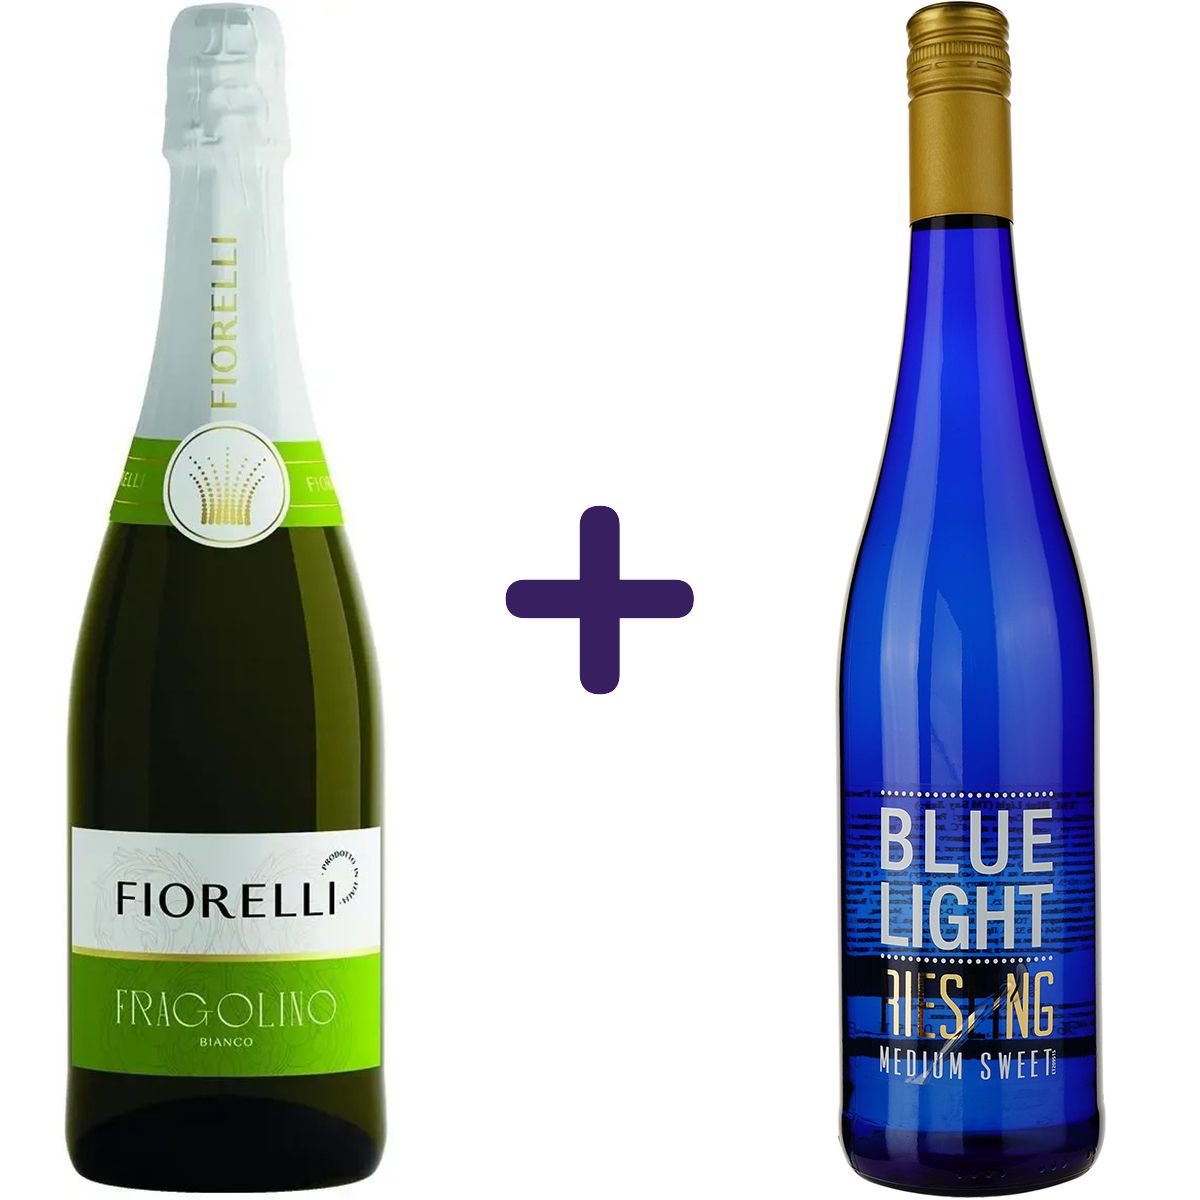 Набор: напиток винный Fiorelli Fragolino Bianco белое сладкое 0.75 л + вино Hechtsheim Riesling Blue Light Medium Sweet 0.75 л - фото 1